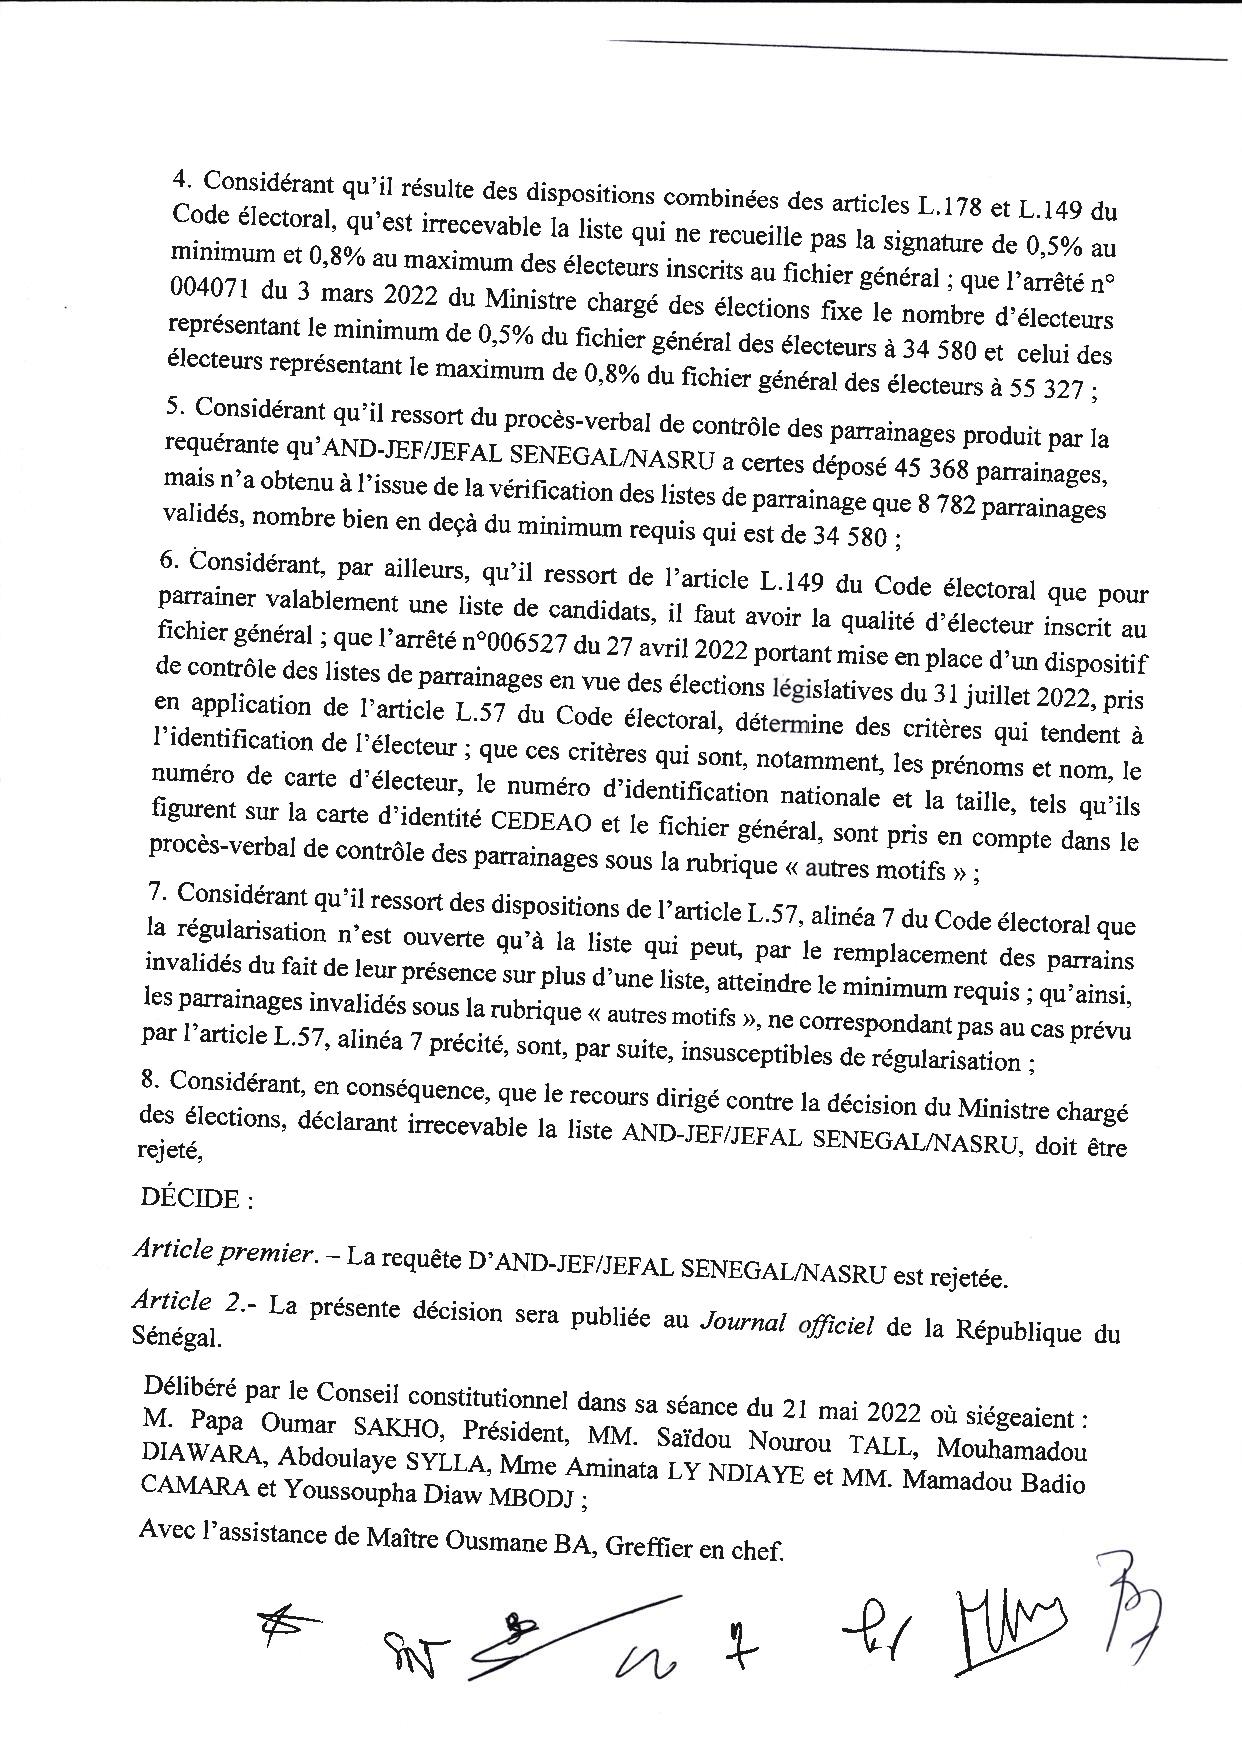 Décision n°5 : Le Conseil Constitutionnel rejette la requête de AND-JEF/JEFAL SENEGAL/NASRU